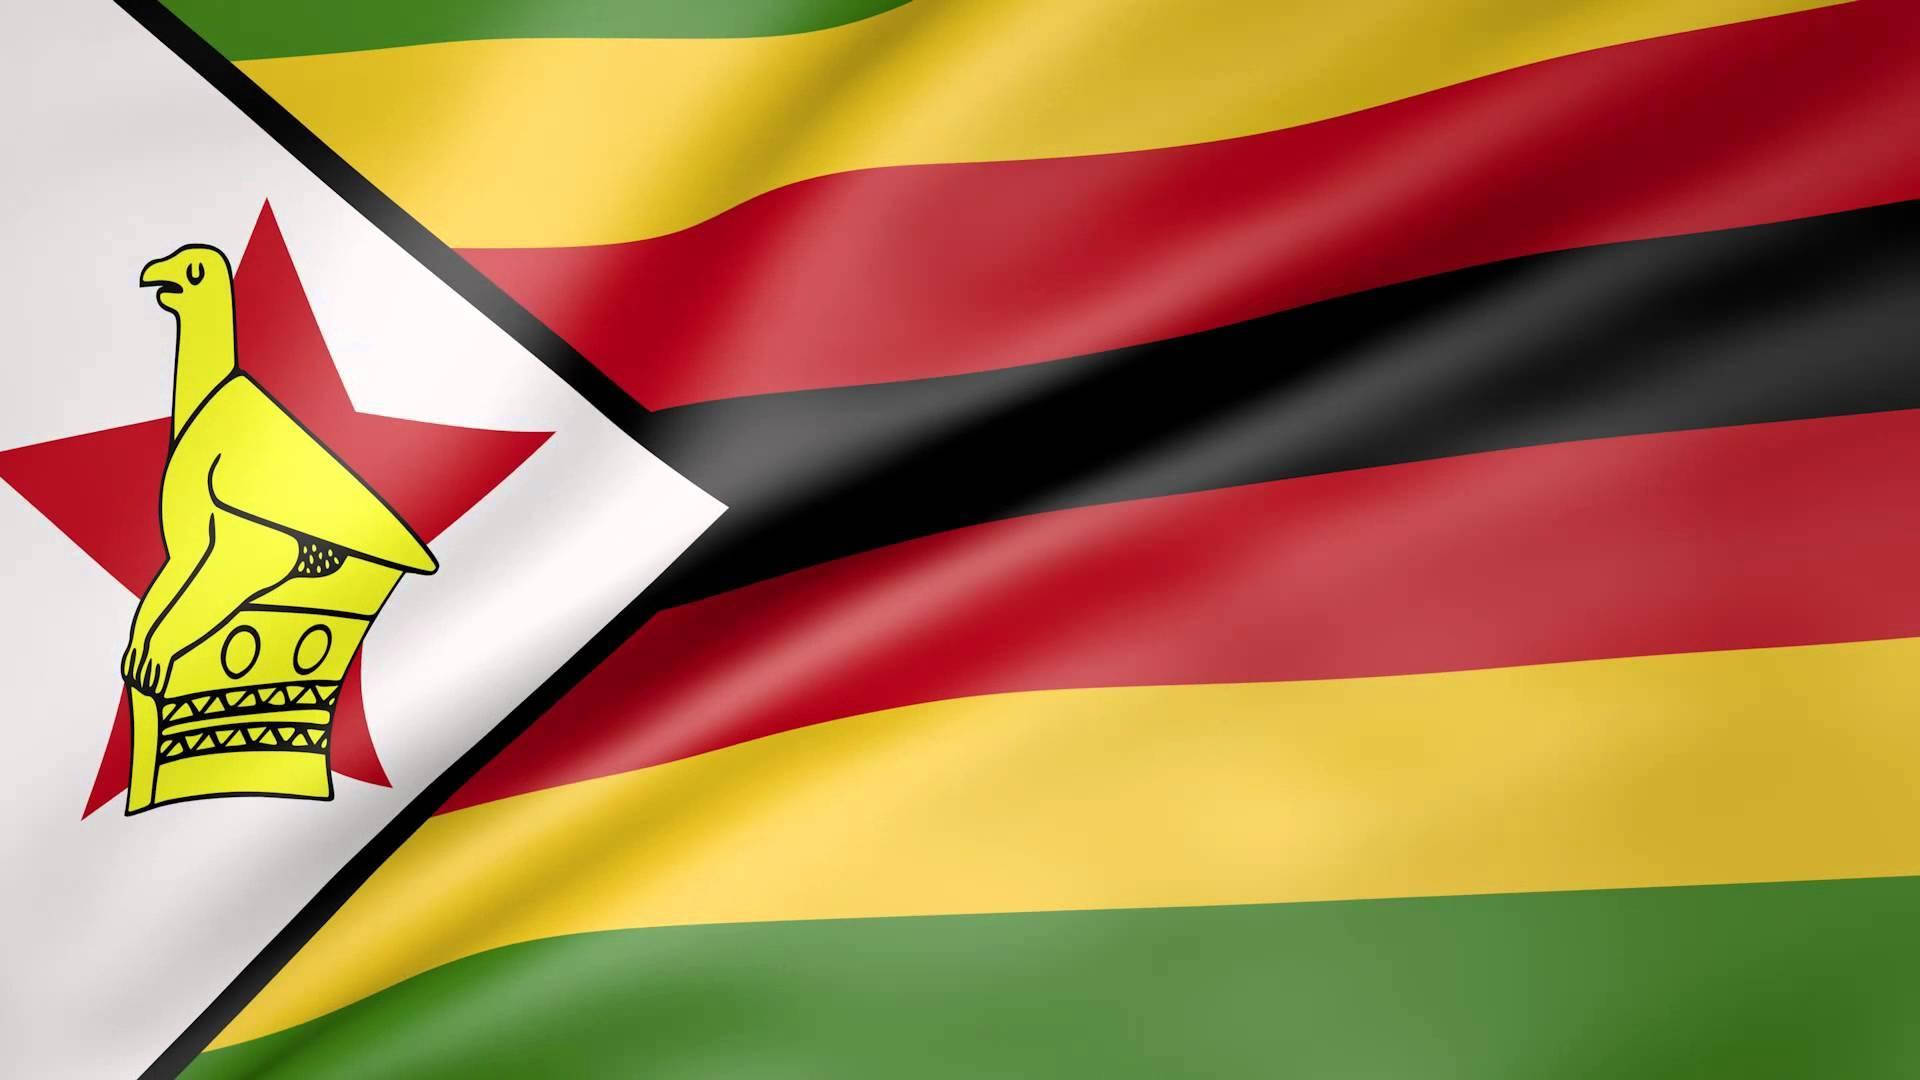 Zimbabwe's National Flag